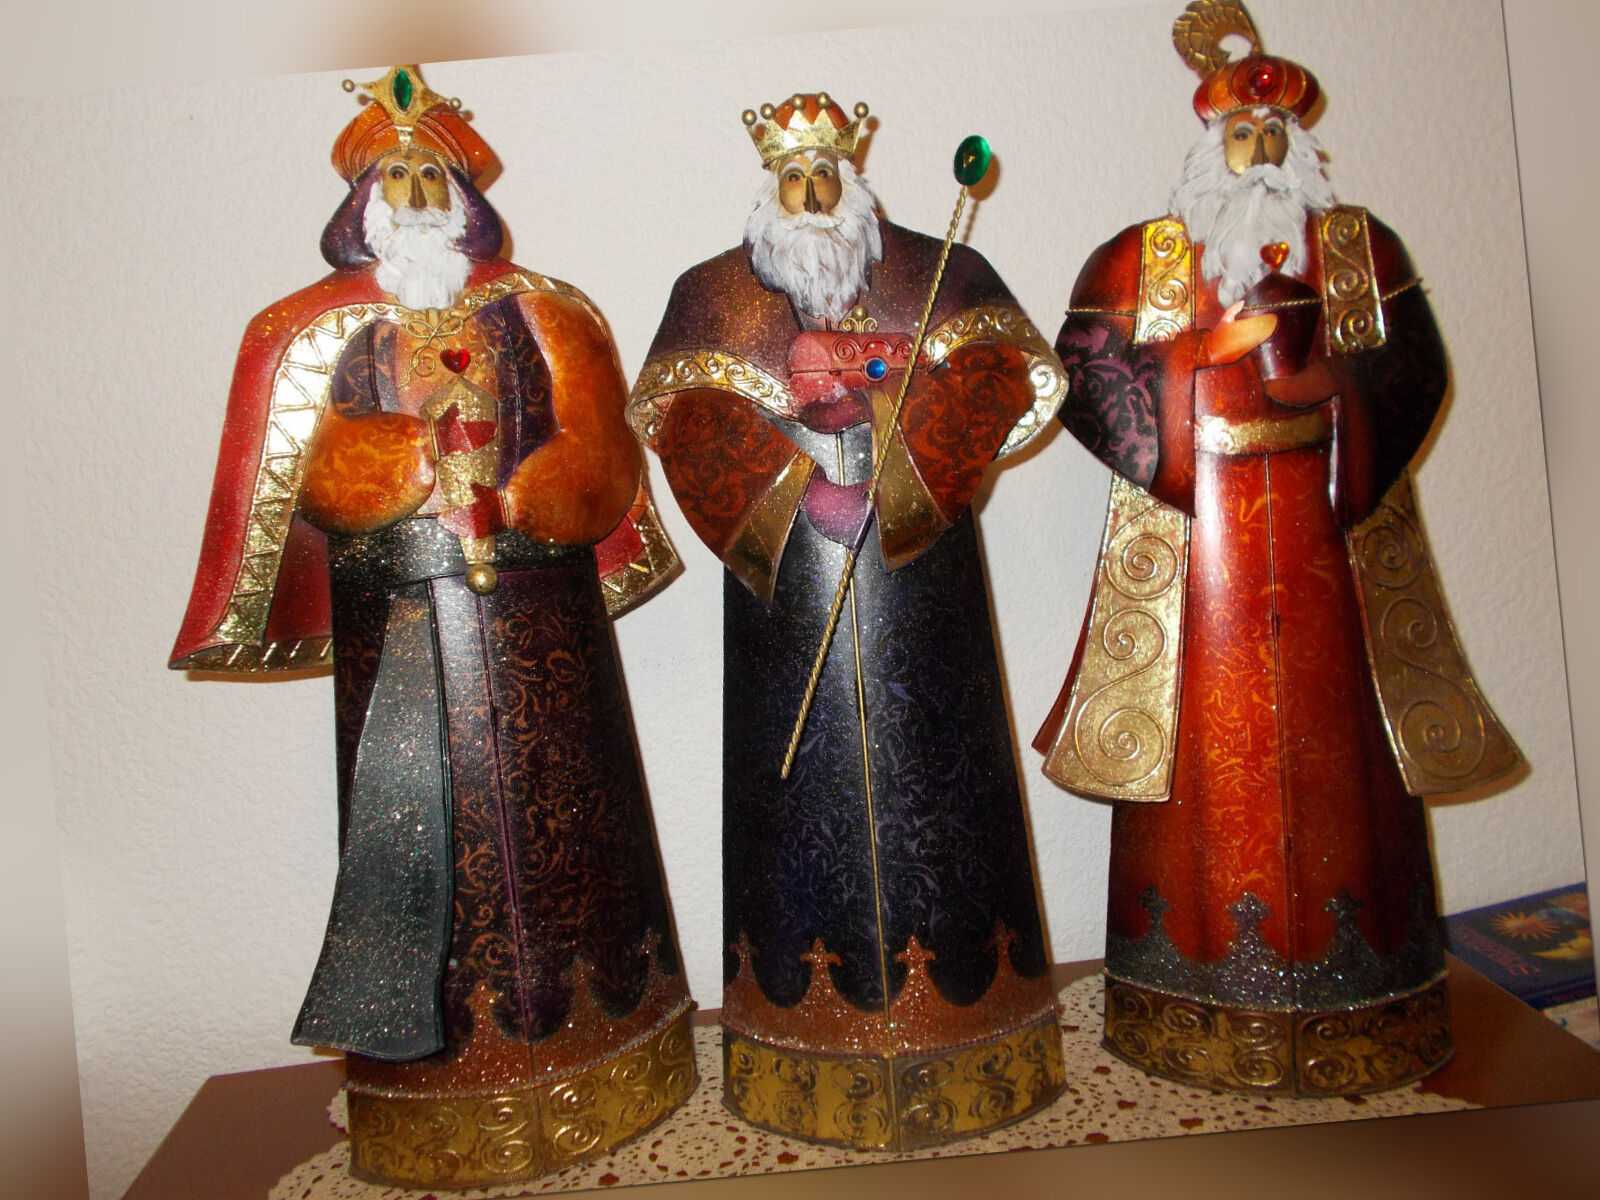 Heiligen 3 Könige,Villeroy & Boch, Weihnachtsfiguren,Deko, 60/55/60cm H,Rarität